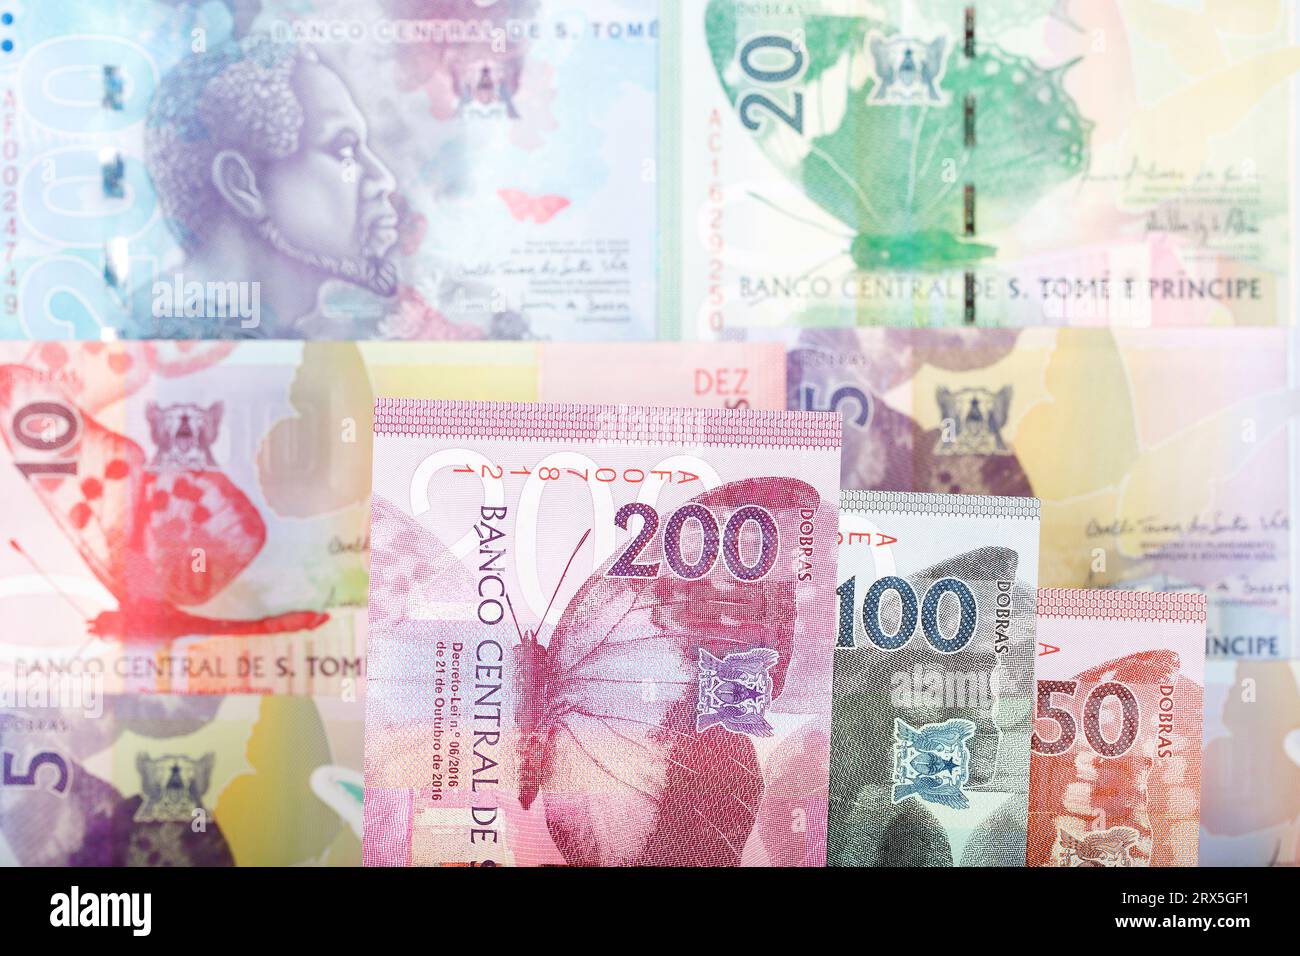 Sao Tomé und Principe Money - Dobra ein geschäftlicher Hintergrund Stockfoto